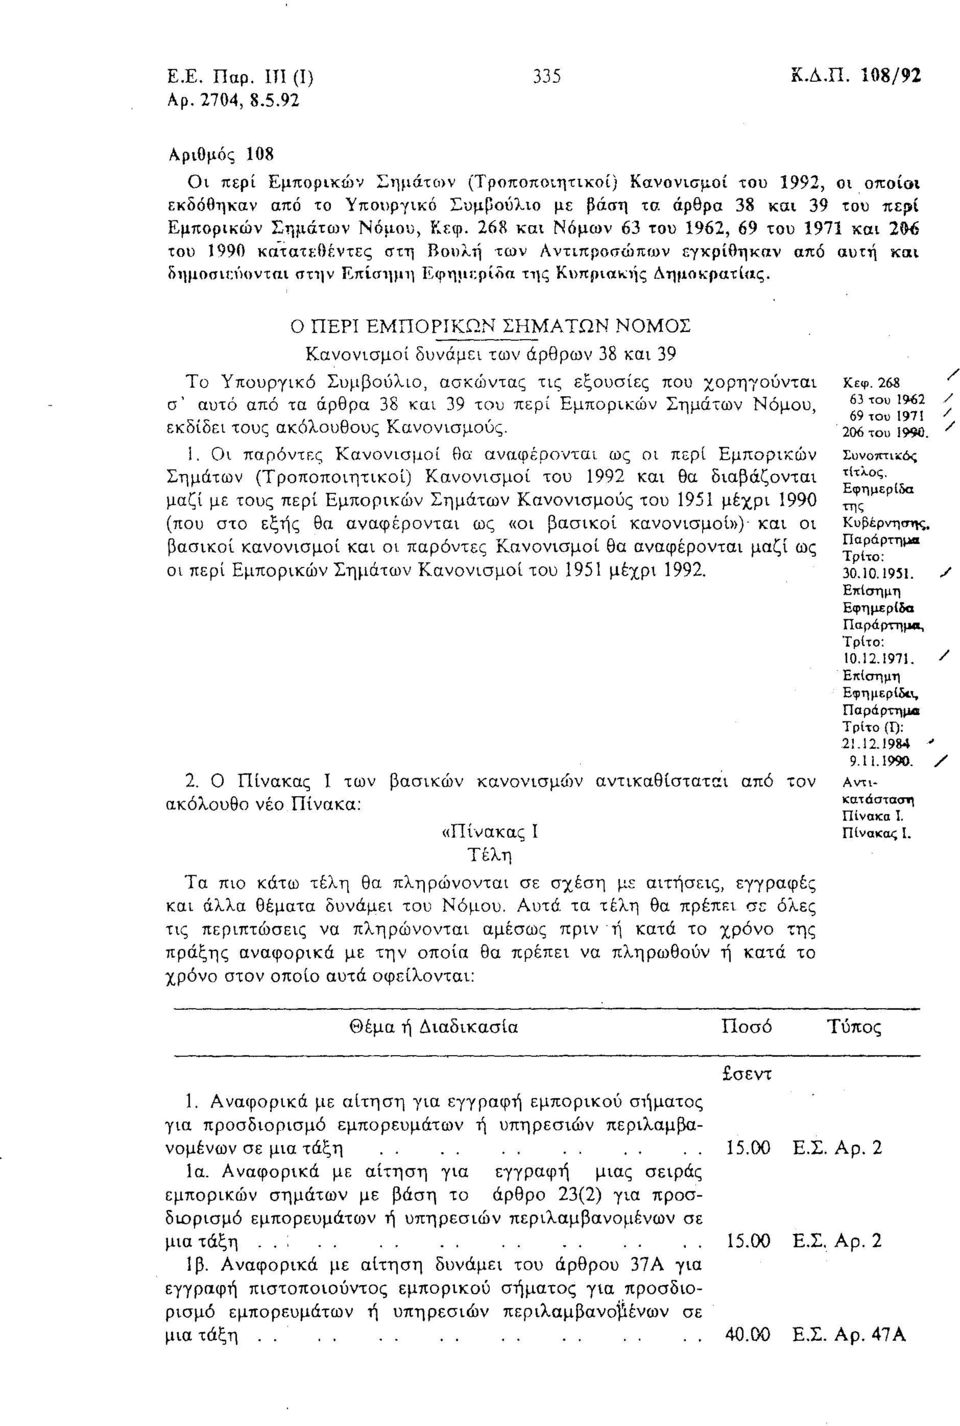 92 Αριθμός 108 ΟΙ περί Εμπορικώ'ι Σημάτων (ΤΡΟΠΟΠΟtηΤΙ1Cοί) Κανονισμοί του 1992, οι ΟΠΟ(ΟΙ εκδόθηκαν από το Υπουργικό Συμμούλιο με βάση τα άρθρα 38 και 39 του περ( Εμπορικών Σημάτων Νόμου, Κεφ.